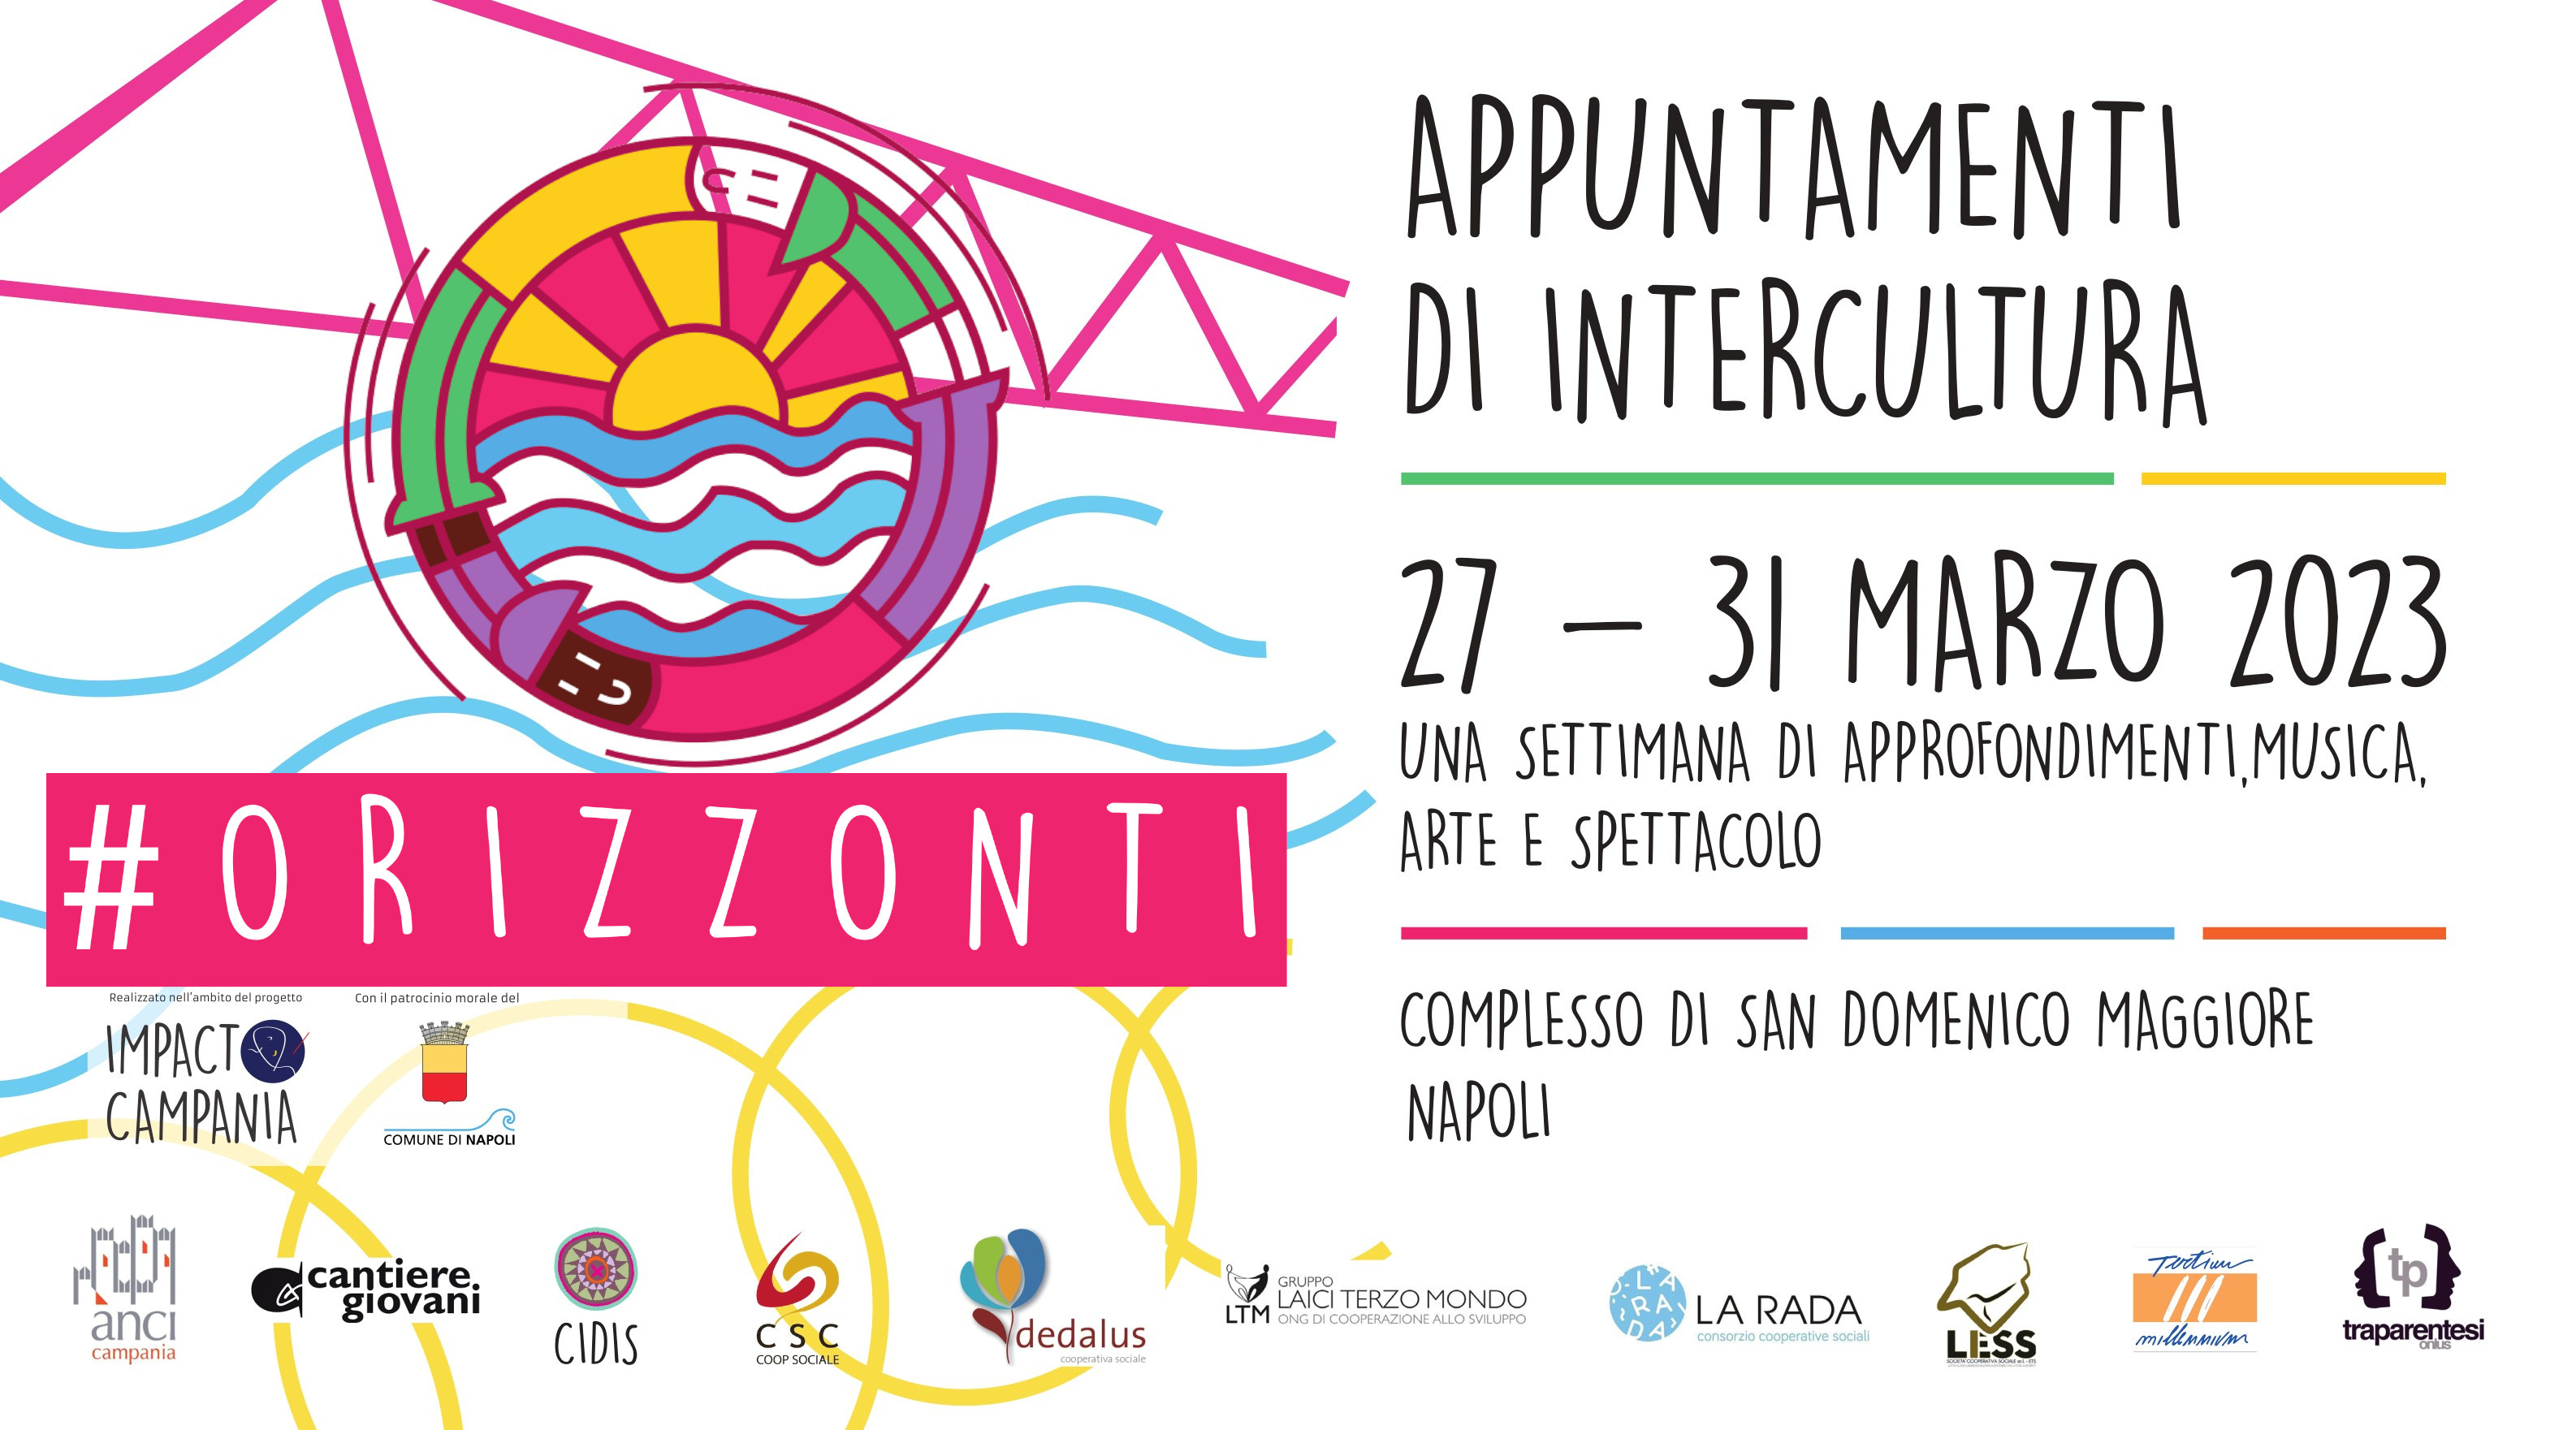 Orizzonti – Appuntamenti di intercultura, a Napoli dal 27 al 31 marzo